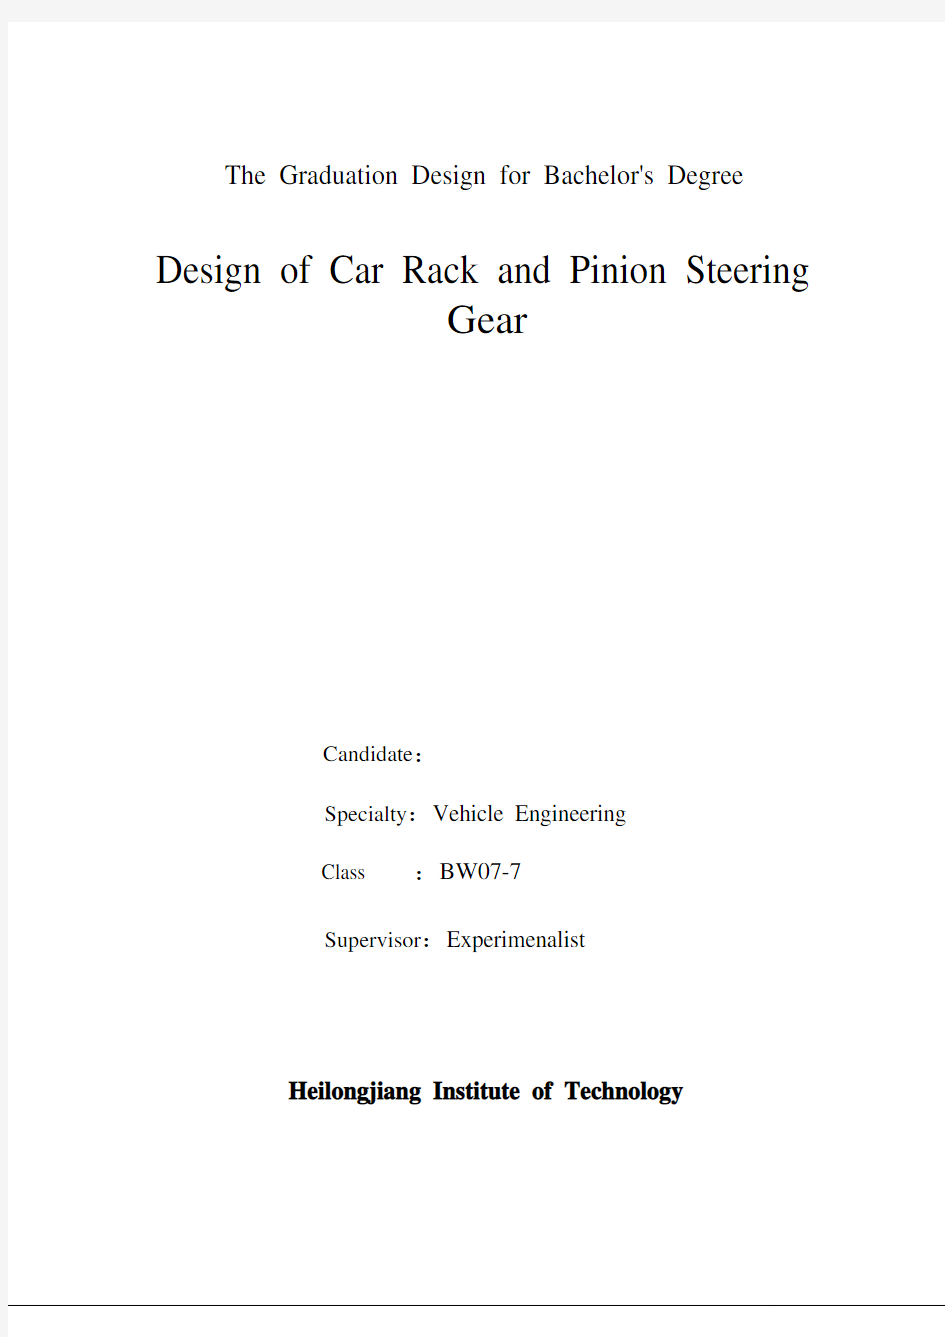 车辆工程毕业设计(论文)汽车齿轮齿条式转向器设计【全套图纸】